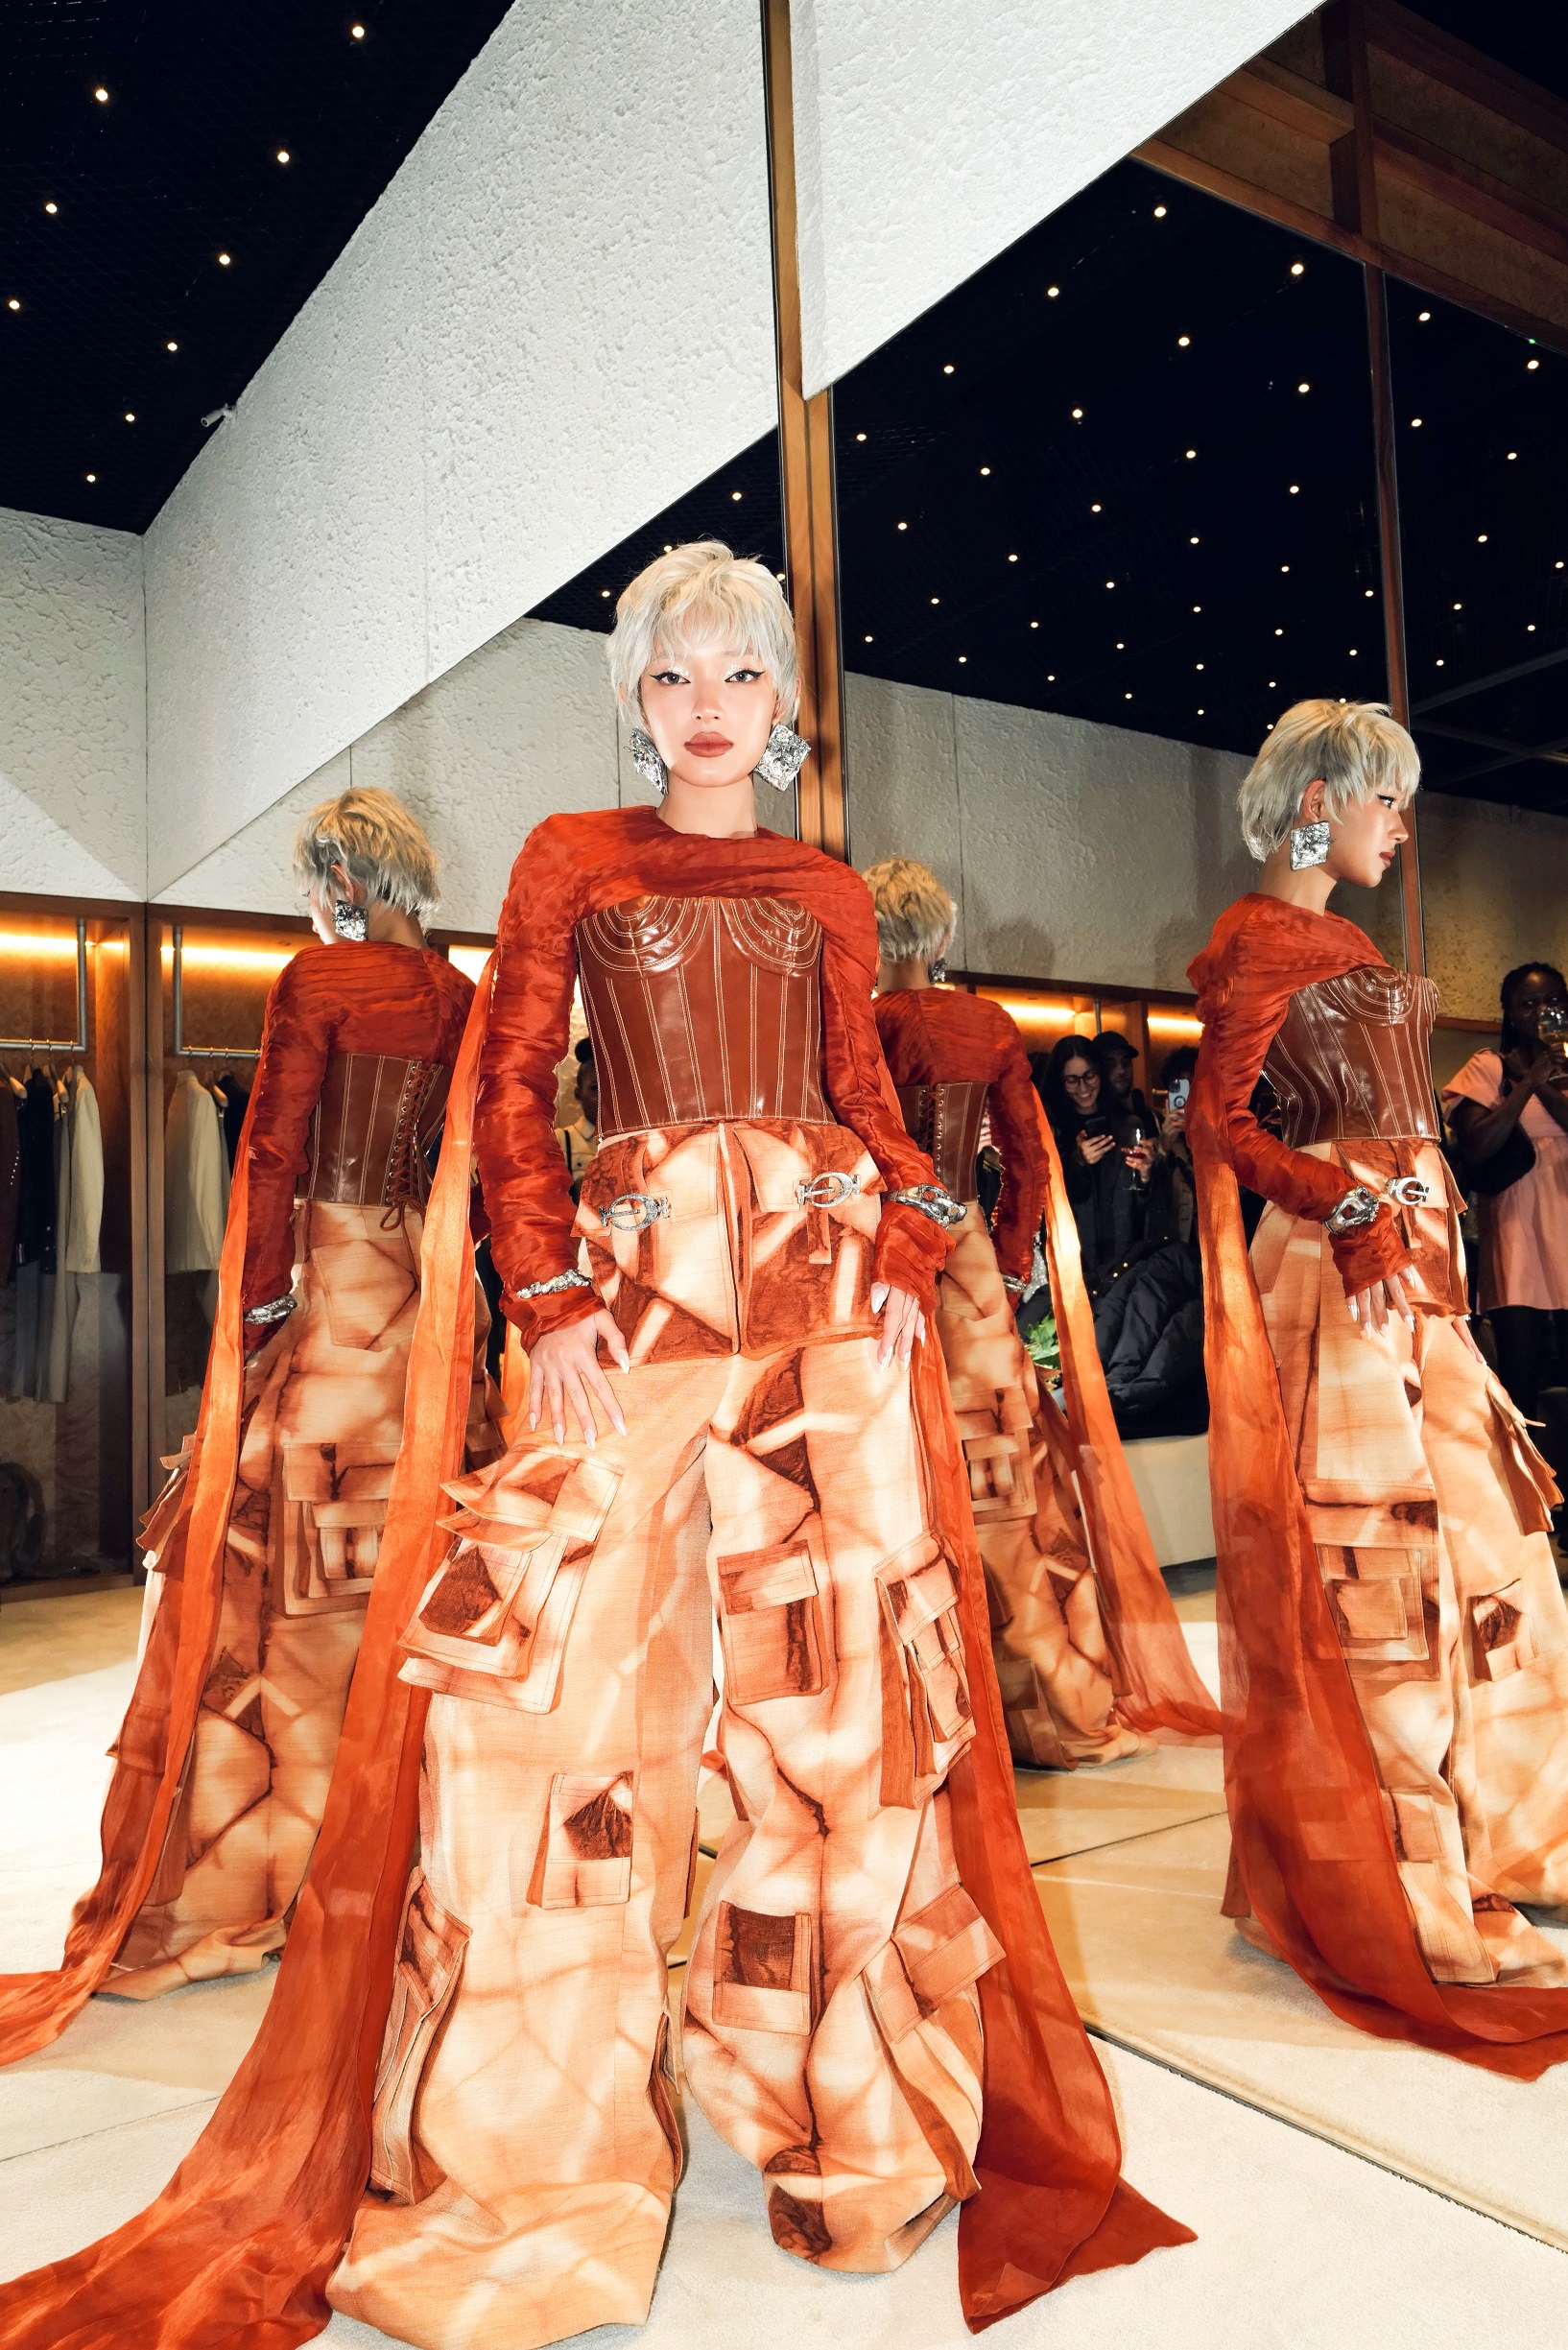 Châu Bùi cá tính trong thiết kế của Phan Đăng Hoàng tại Milan Fashion Week 2023  - Ảnh 5.